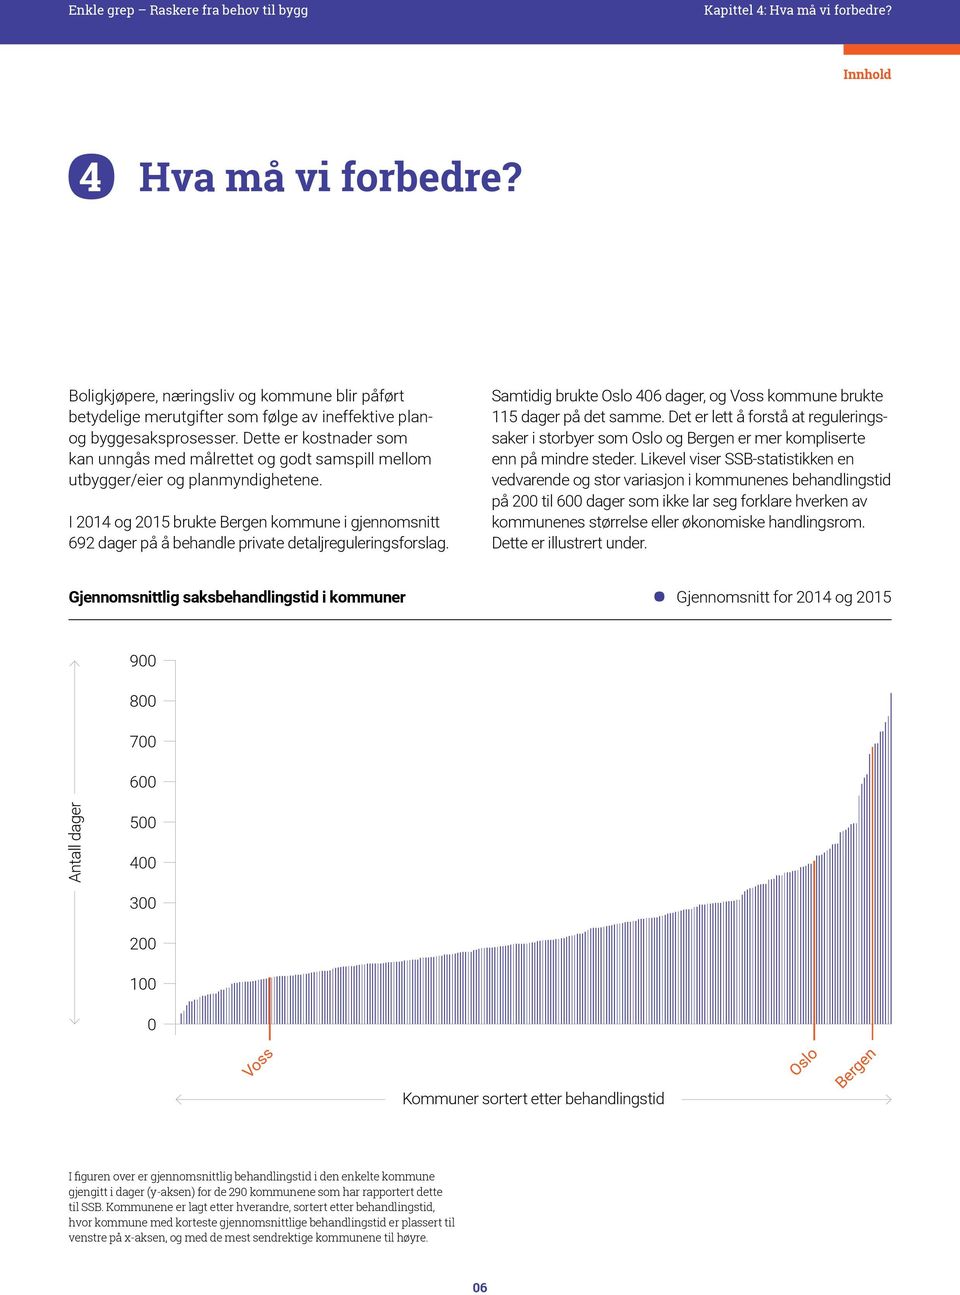 I 2014 og 2015 brukte Bergen kommune i gjennomsnitt 692 dager på å behandle private detaljreguleringsforslag. Samtidig brukte Oslo 406 dager, og Voss kommune brukte 115 dager på det samme.